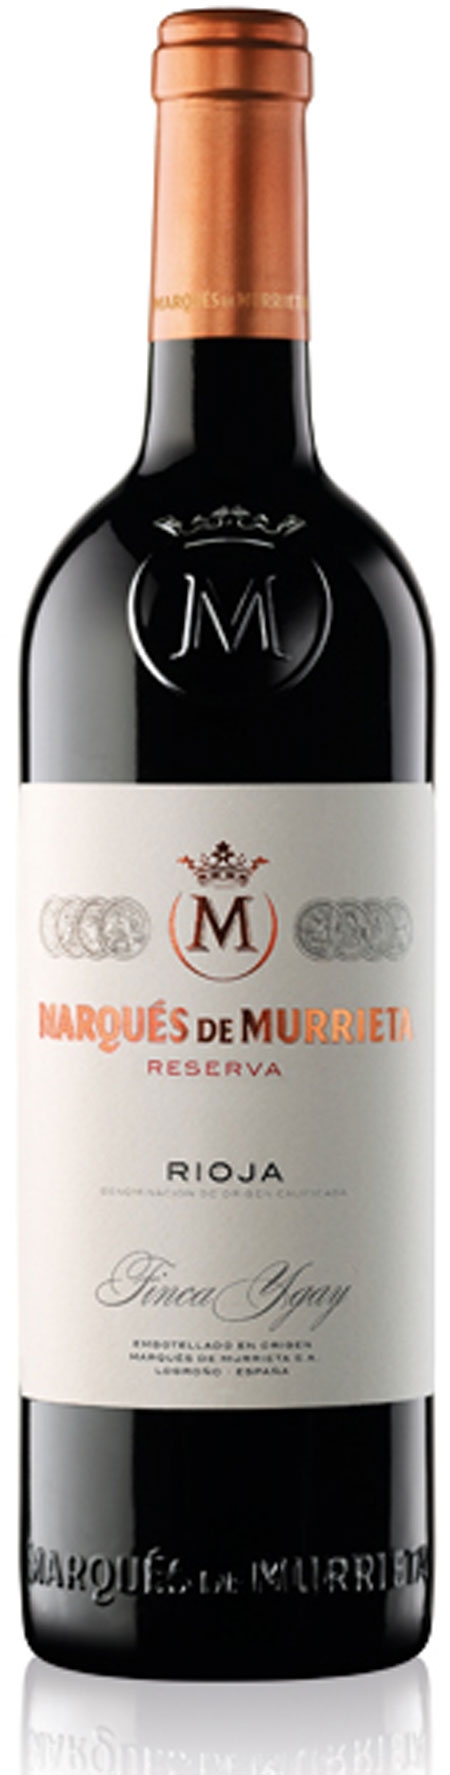 2013 Marqués de Murrieta Reserva